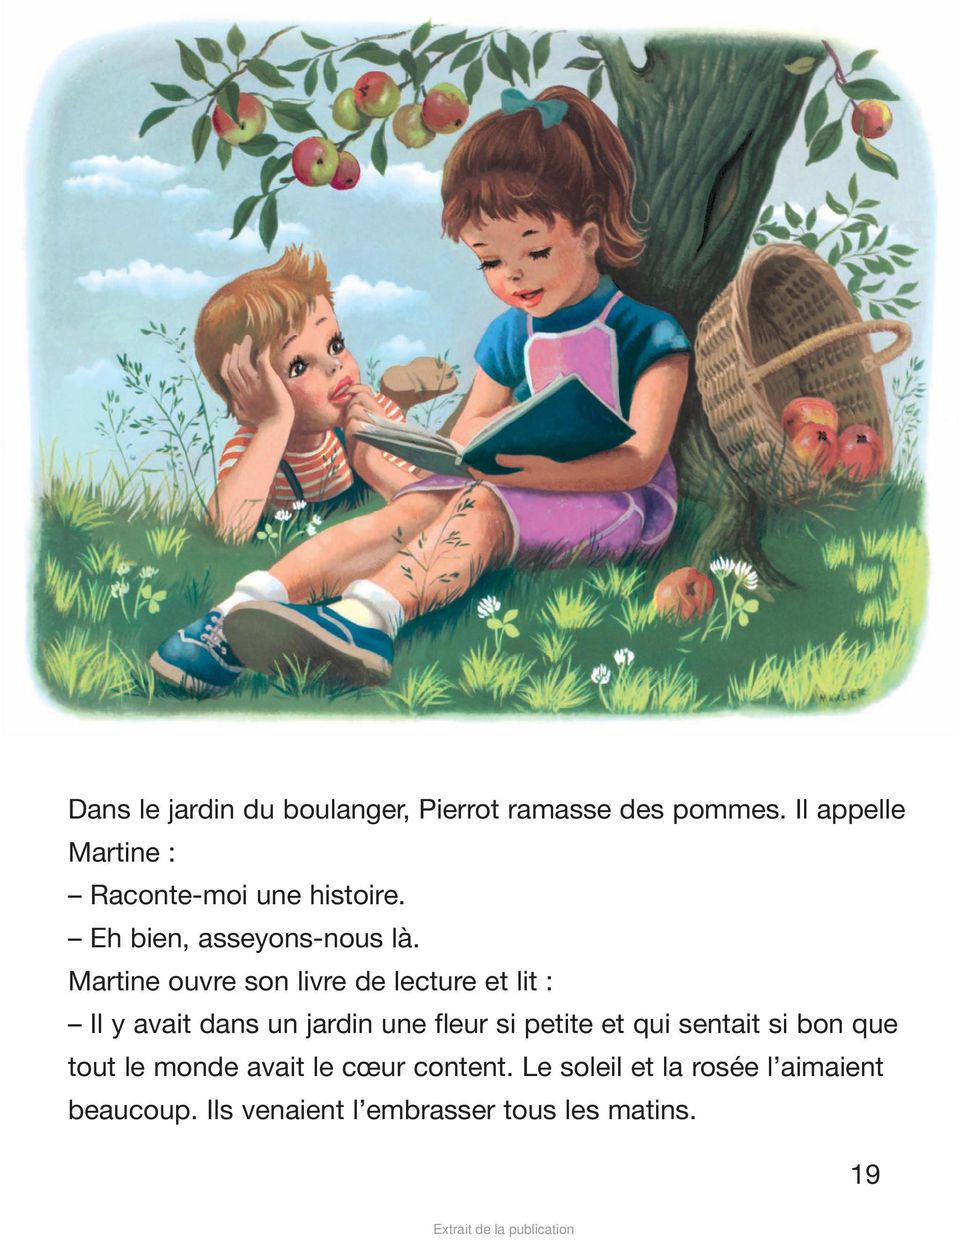 Martine ouvre son livre de lecture et lit : Il y avait dans un jardin une fleur si petite et